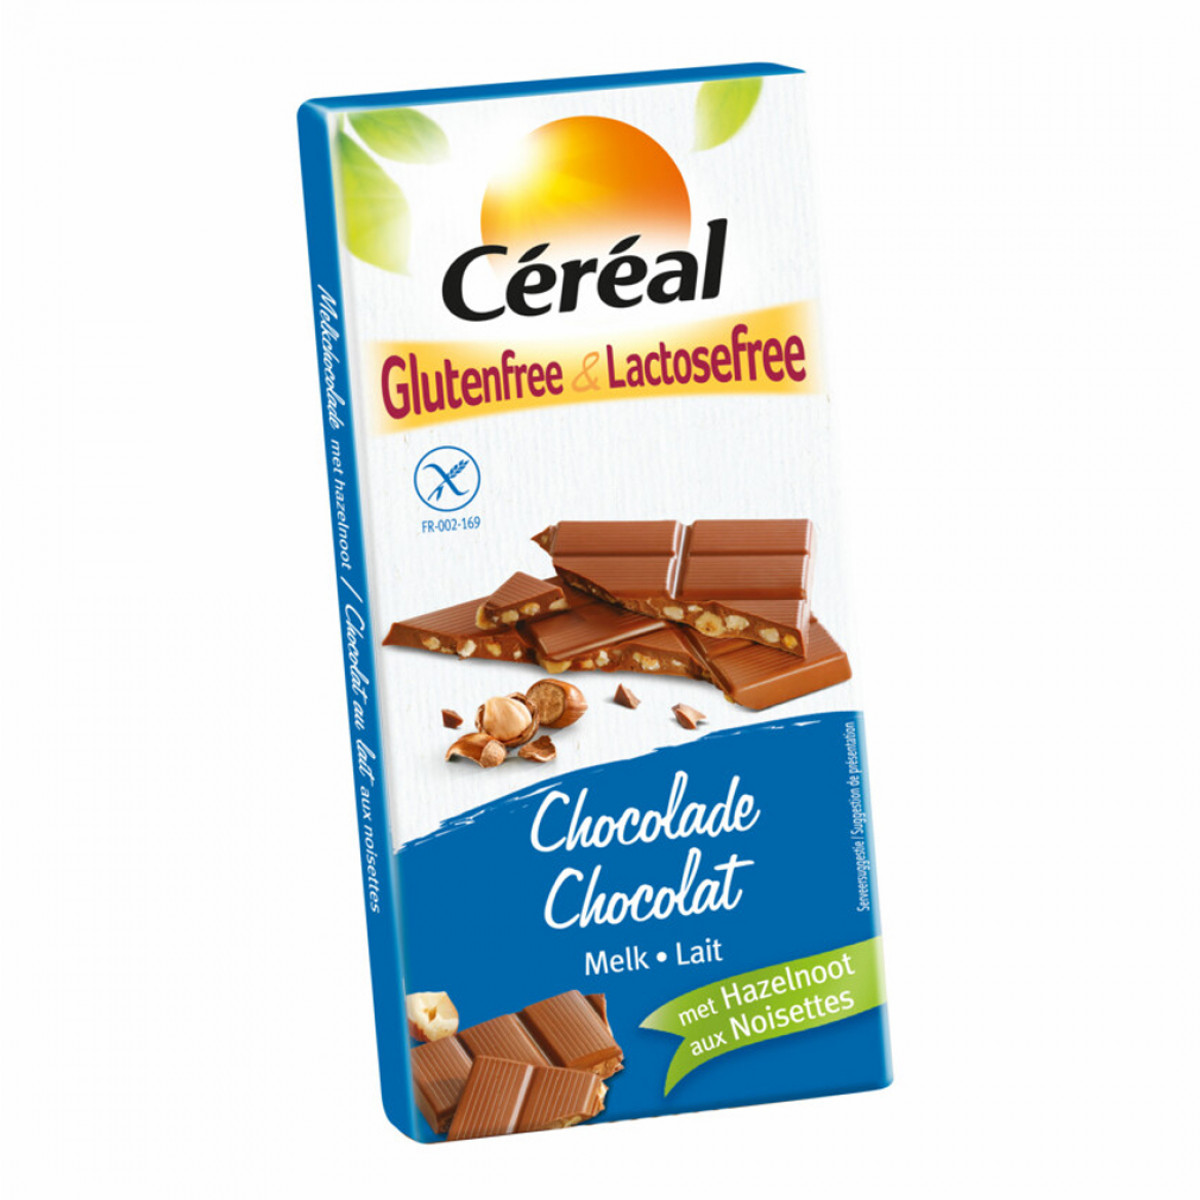 Melkchocolade Tablet Hazelnoot